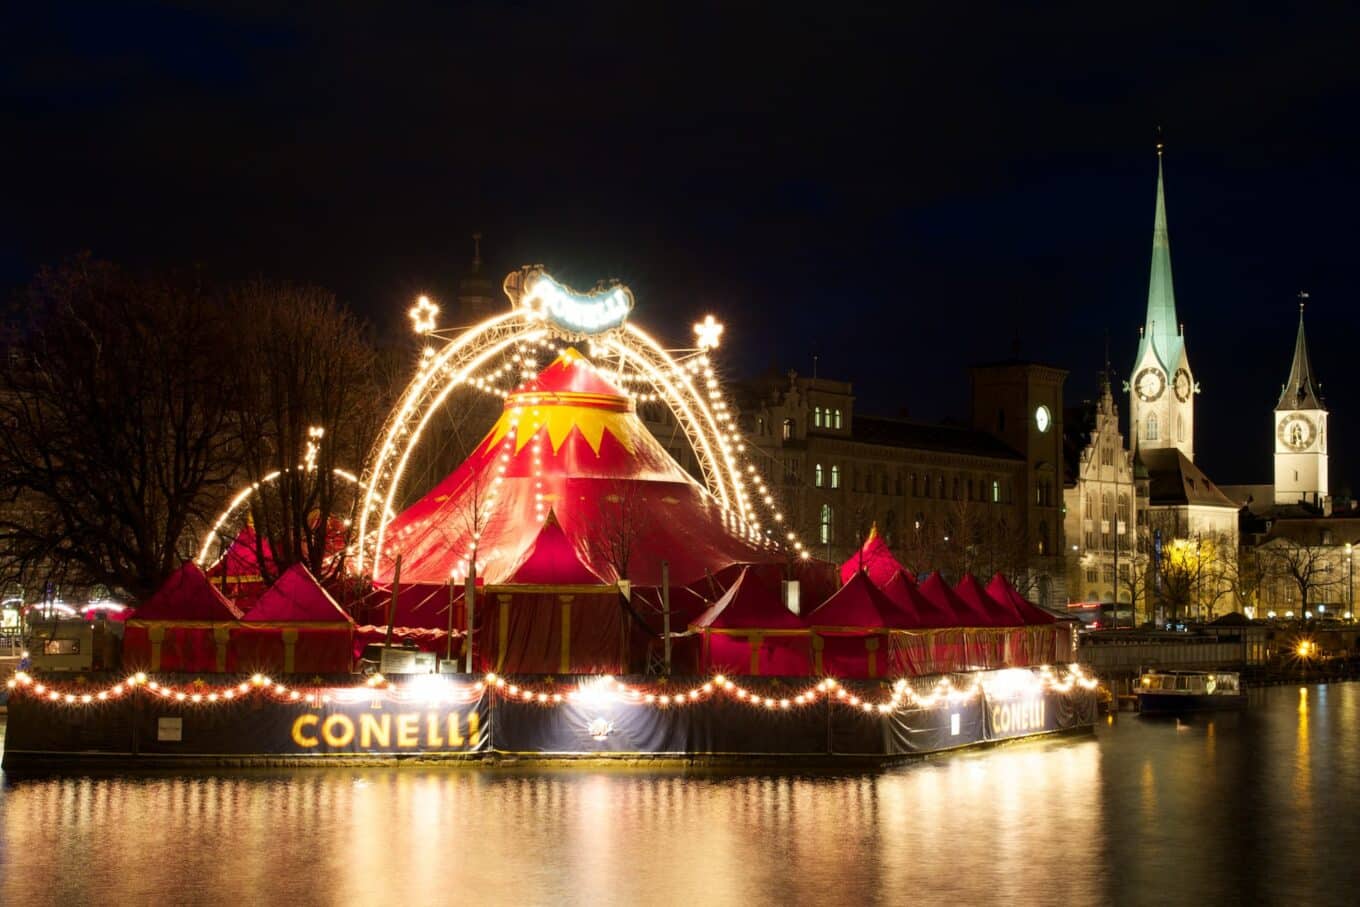 Das festlich beleuchtete Zelt des Weihnachtscircus Conelli in Zürich.